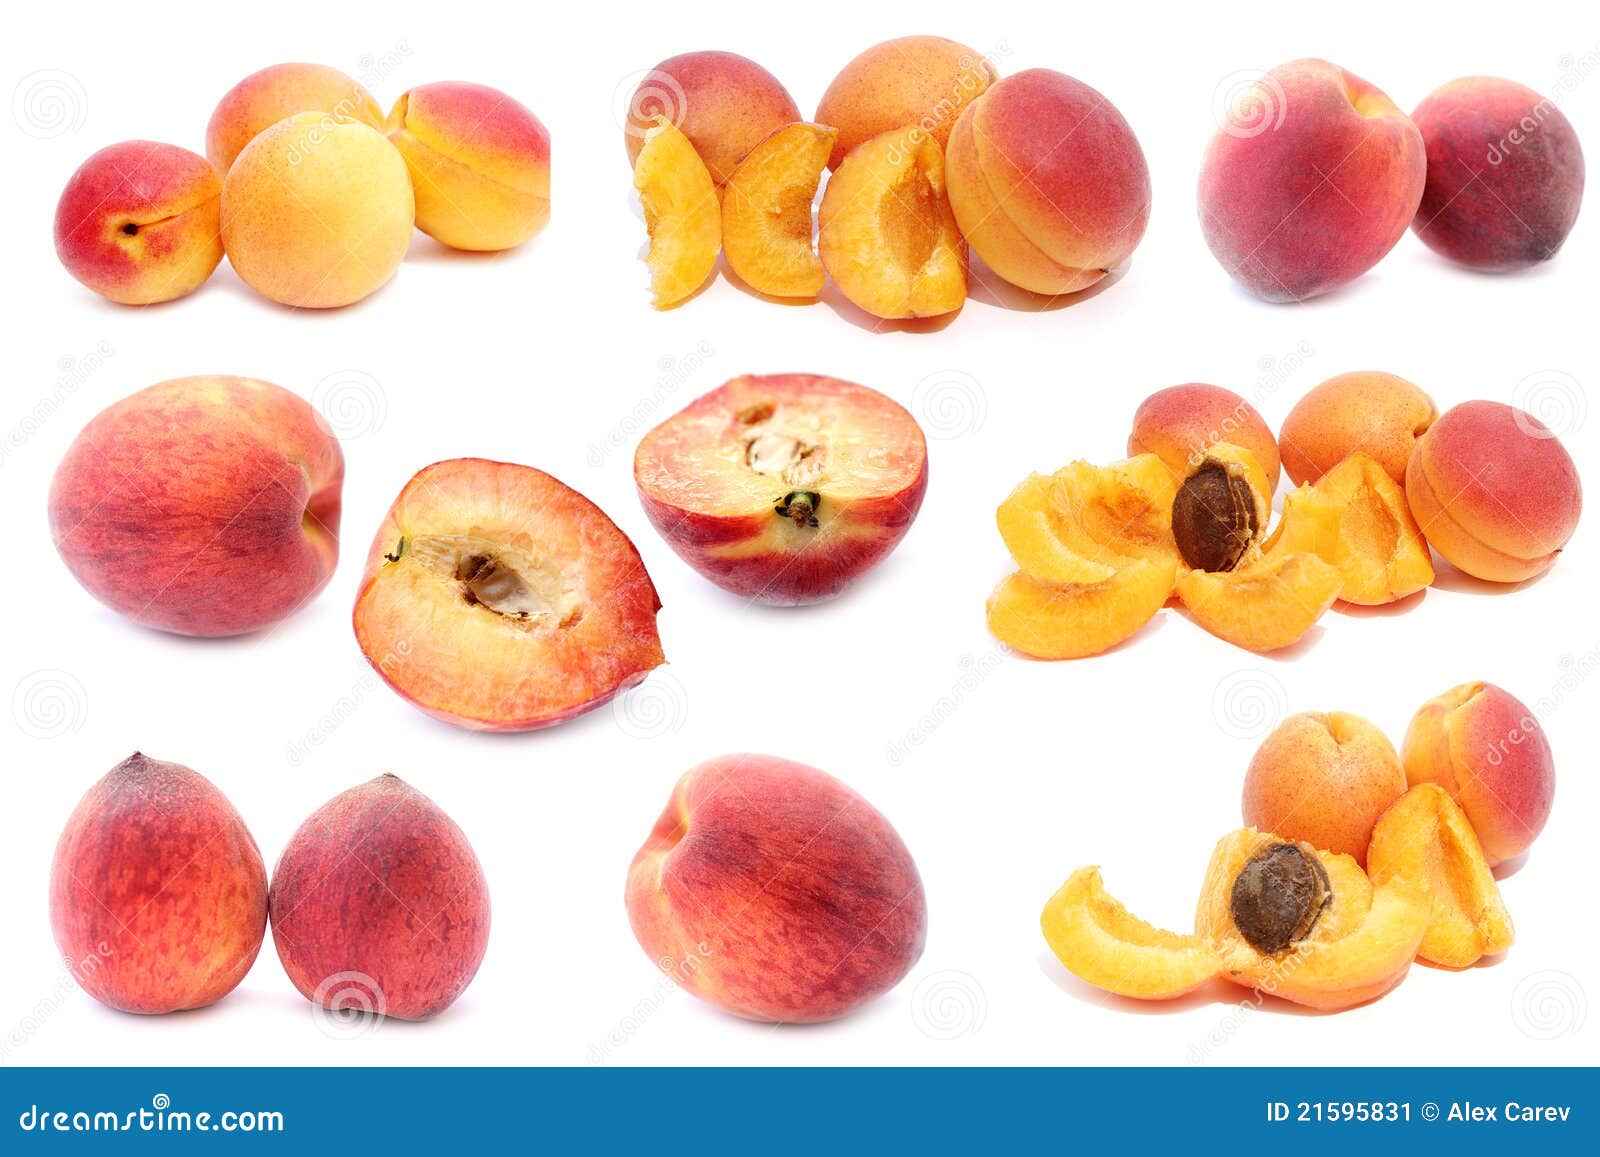 Персик форма женского органа. Нектарин и абрикос отличие. Нектарин и персик разница. Персик нектарин абрикос. Нектарин персик абрикос как отличить.